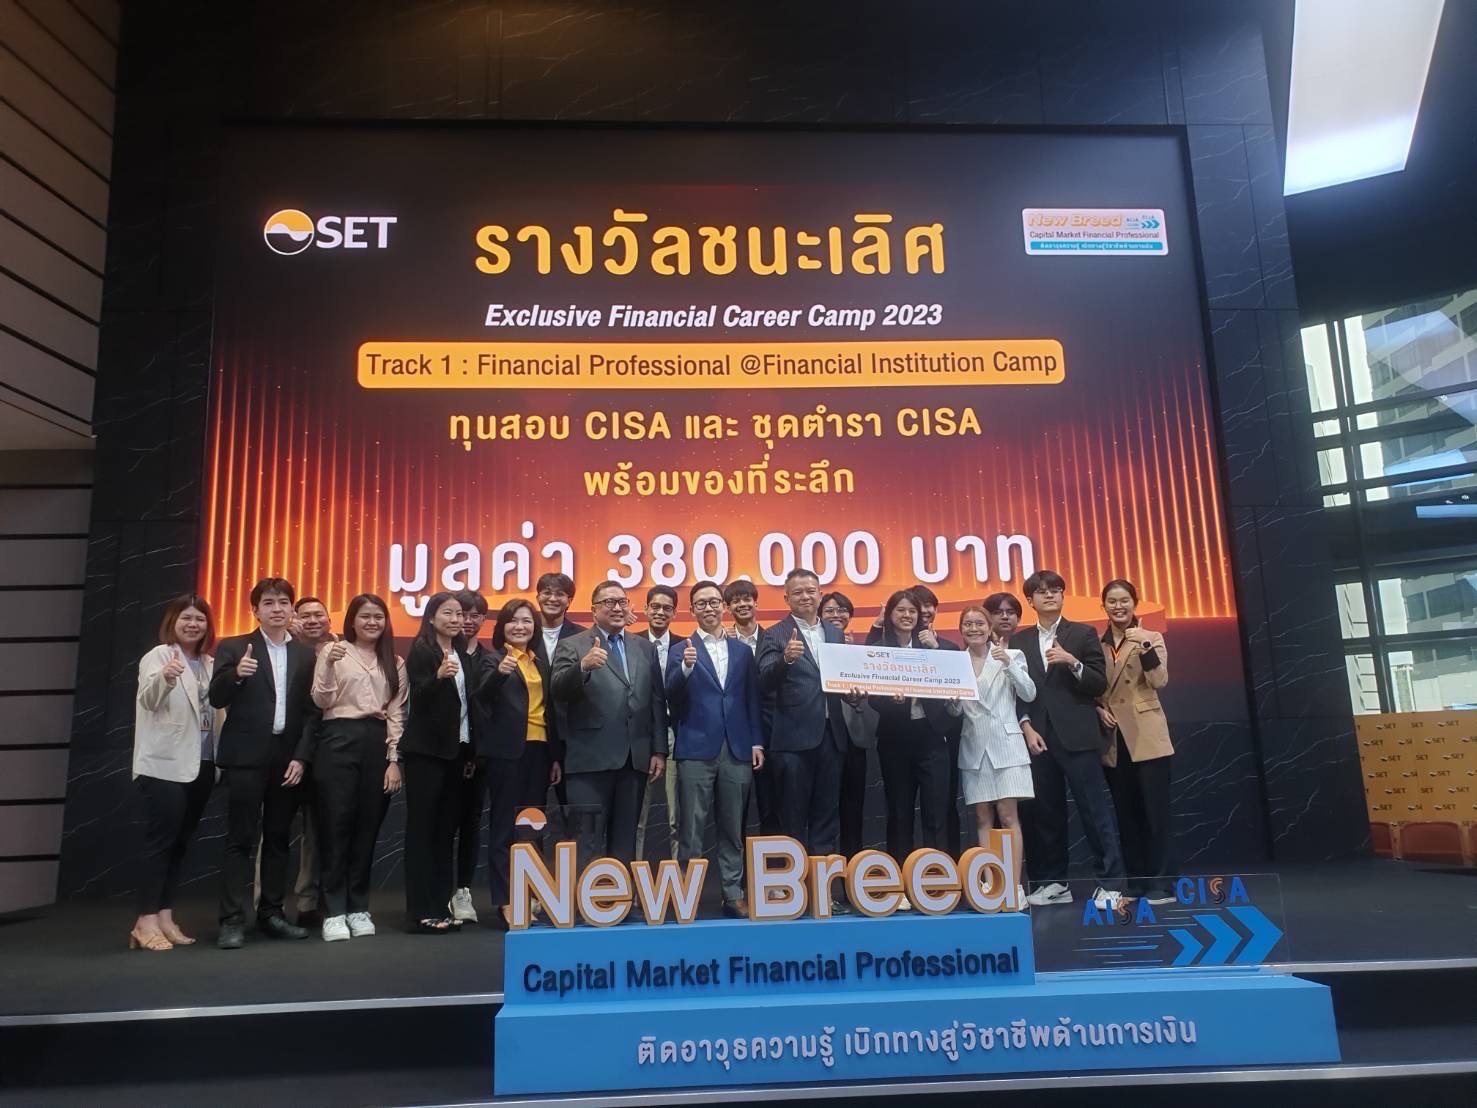 ภาควิชาเศรษฐศาสตร์ ขอแสดงความยินดีกับ คุณชยพล ปิ่นทอง รหัส 6514700047 นิสิต MECON ภาคปกติ รุ่นที่ 82 M ได้รางวัลชนะเลิศ Financial Professional@Financial Institution จากการแข่งขันประเภททีมในกิจกรรม Exclusive Financial Career Camp จัดโดยตลาดหลักทรัพย์แห่งประเทศไทย เมื่อวันที่ 18 มิถุนายน 2566